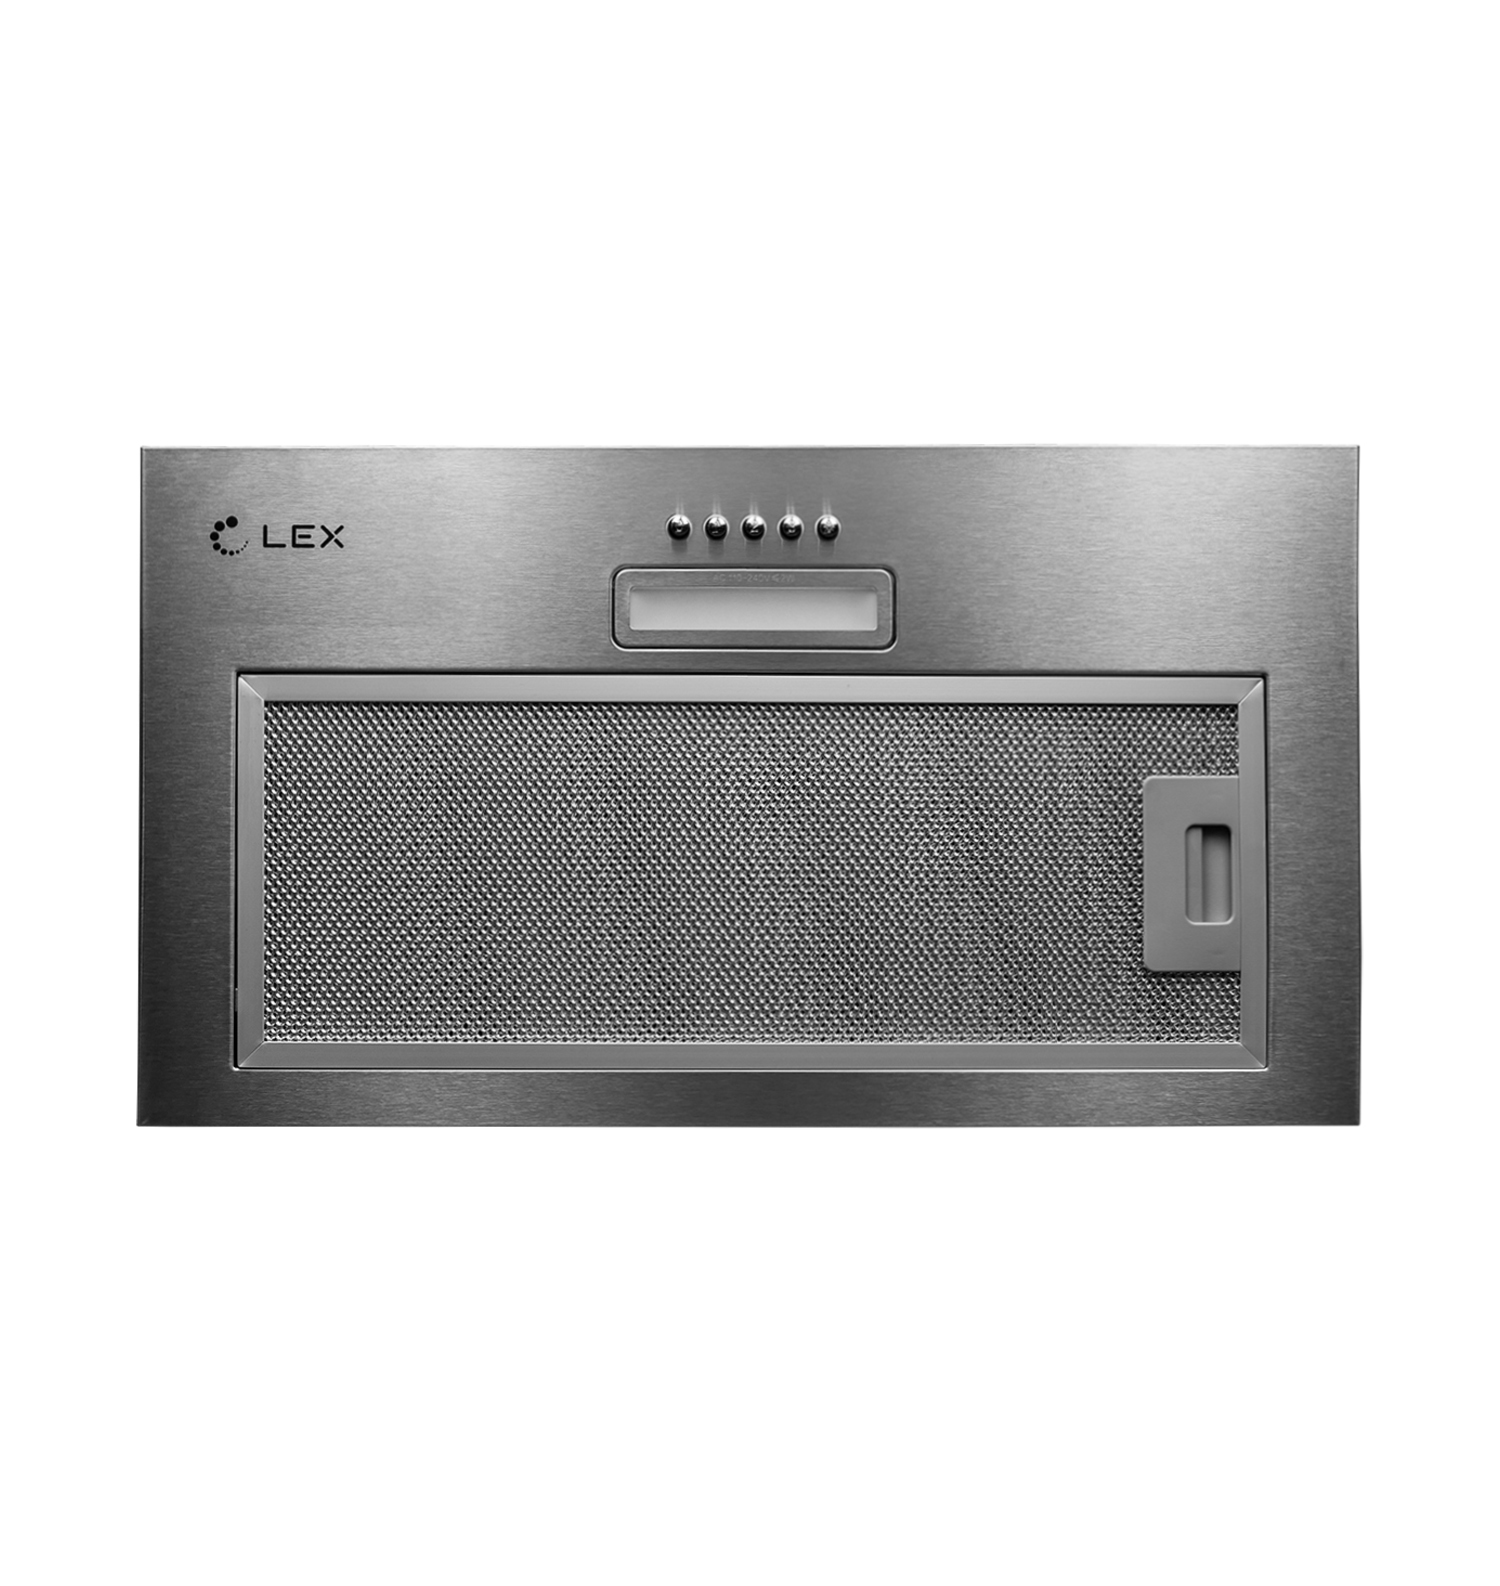 Кухонная вытяжка встраиваемая Lex GS Bloc Light 60 см серая (CHTI000328) кухонная вытяжка встраиваемая lex gs bloc p 90 см серая chti000323